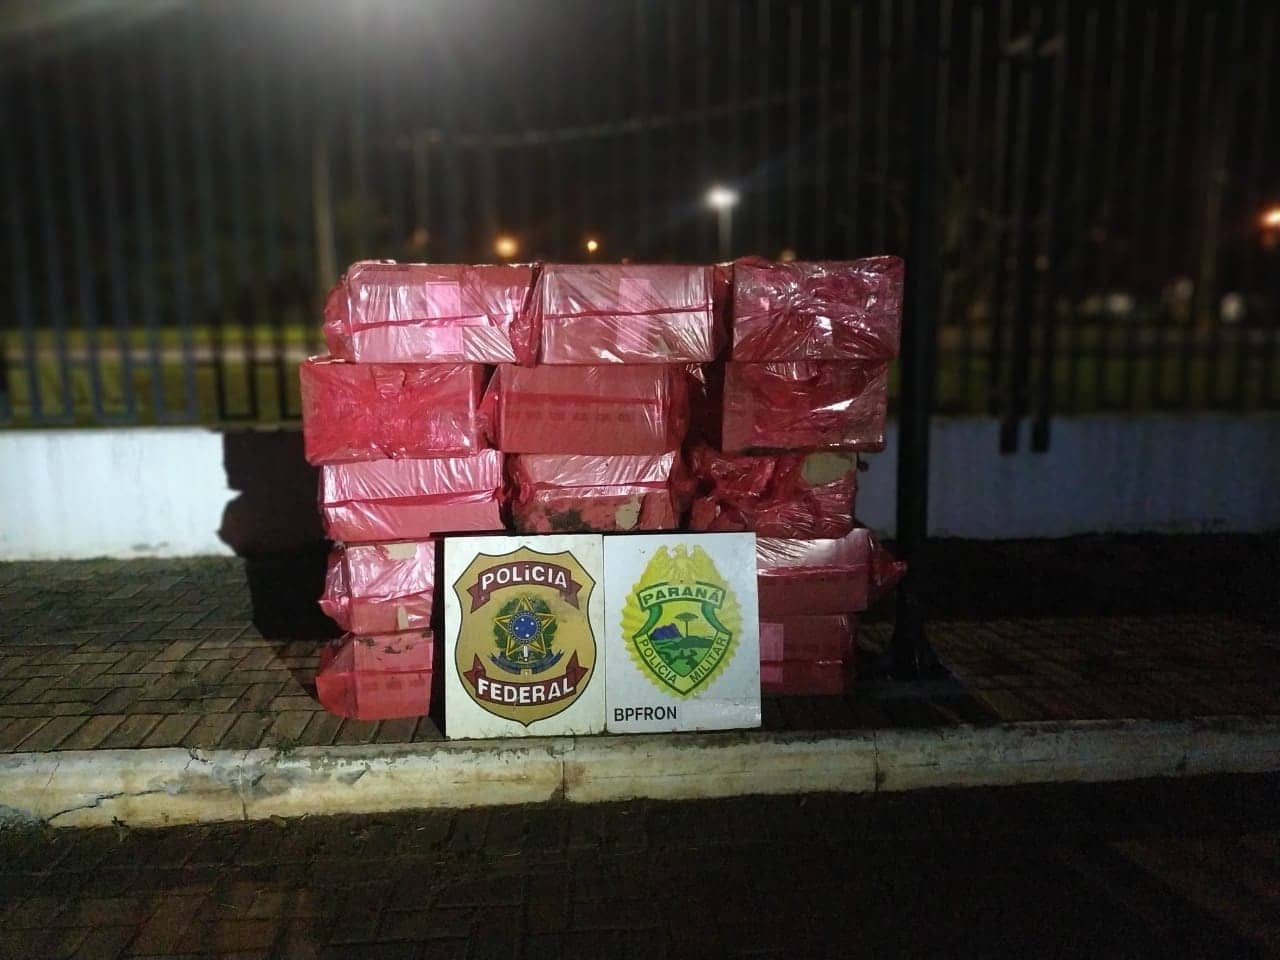 Guaíra - BPFron e Polícia Federal apreendem cigarros contrabandeados, carro e embarcação • Portal Guaíra